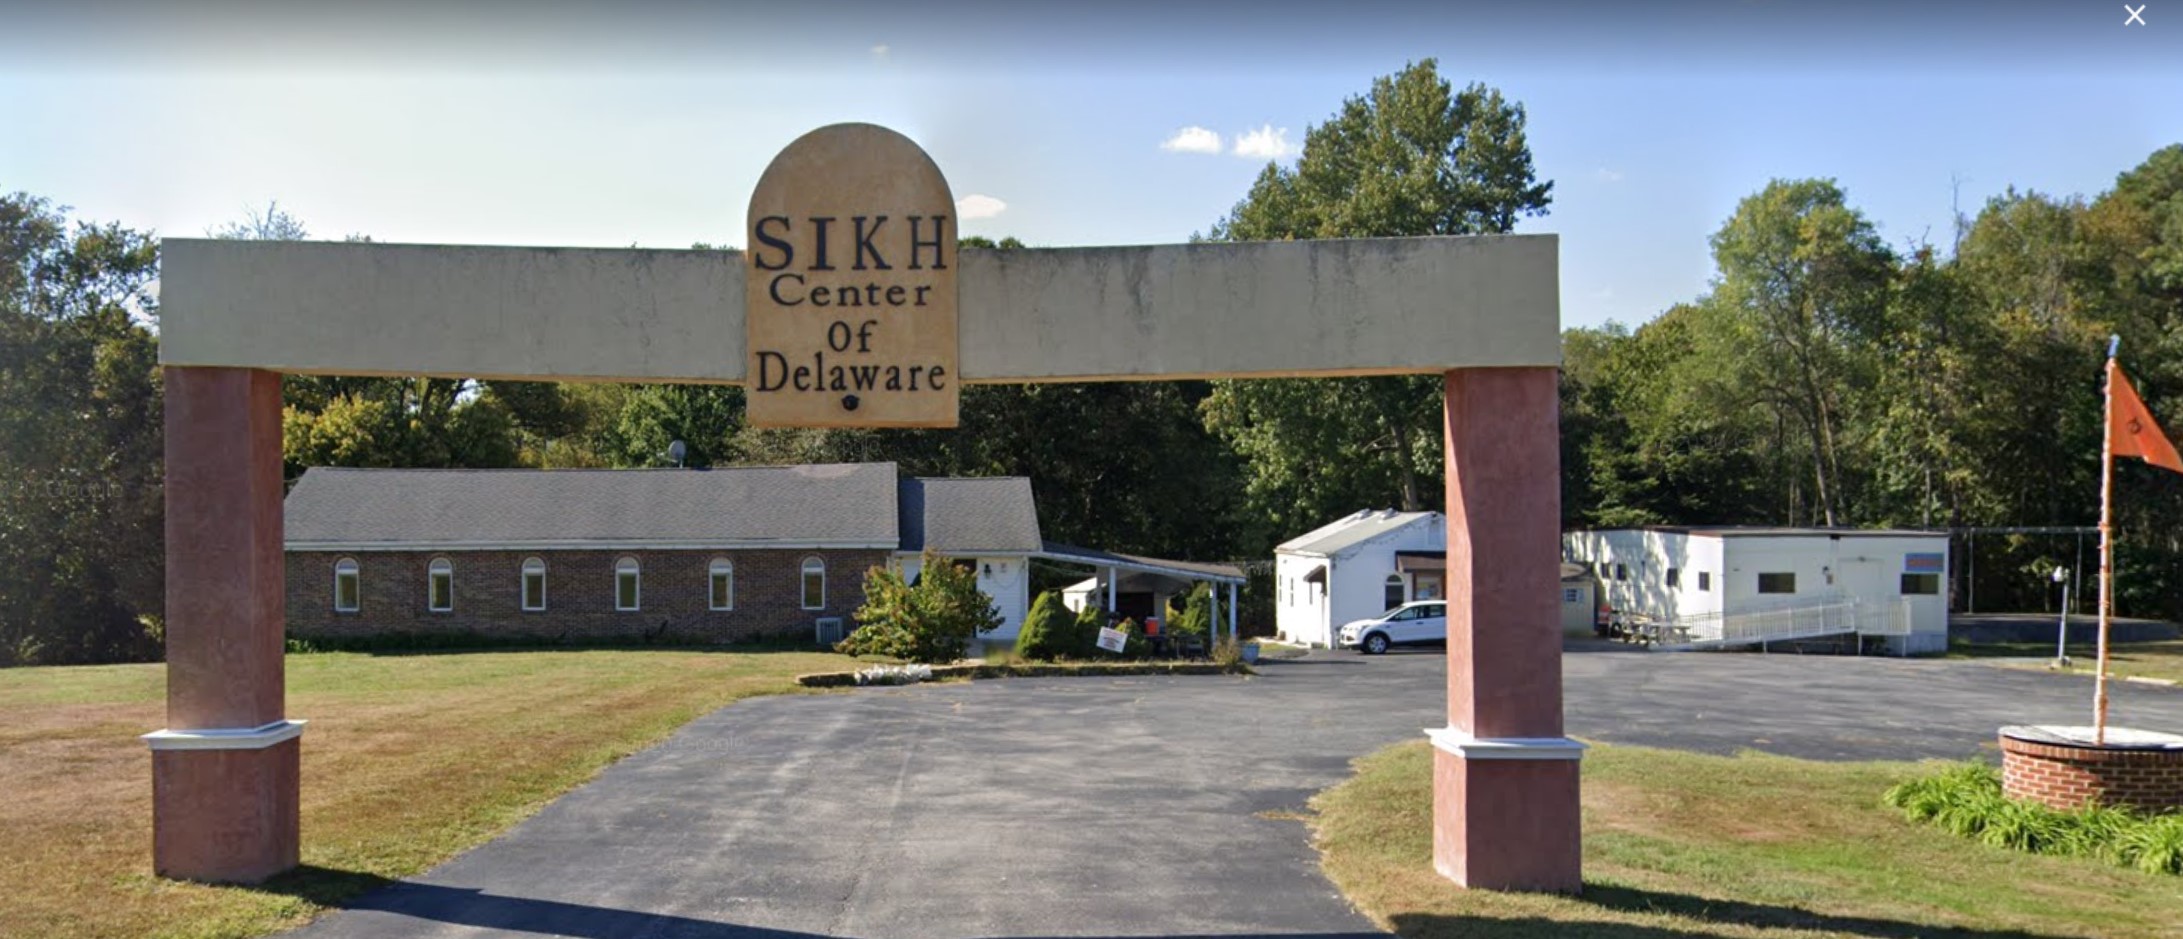 Sikh Center of Delaware